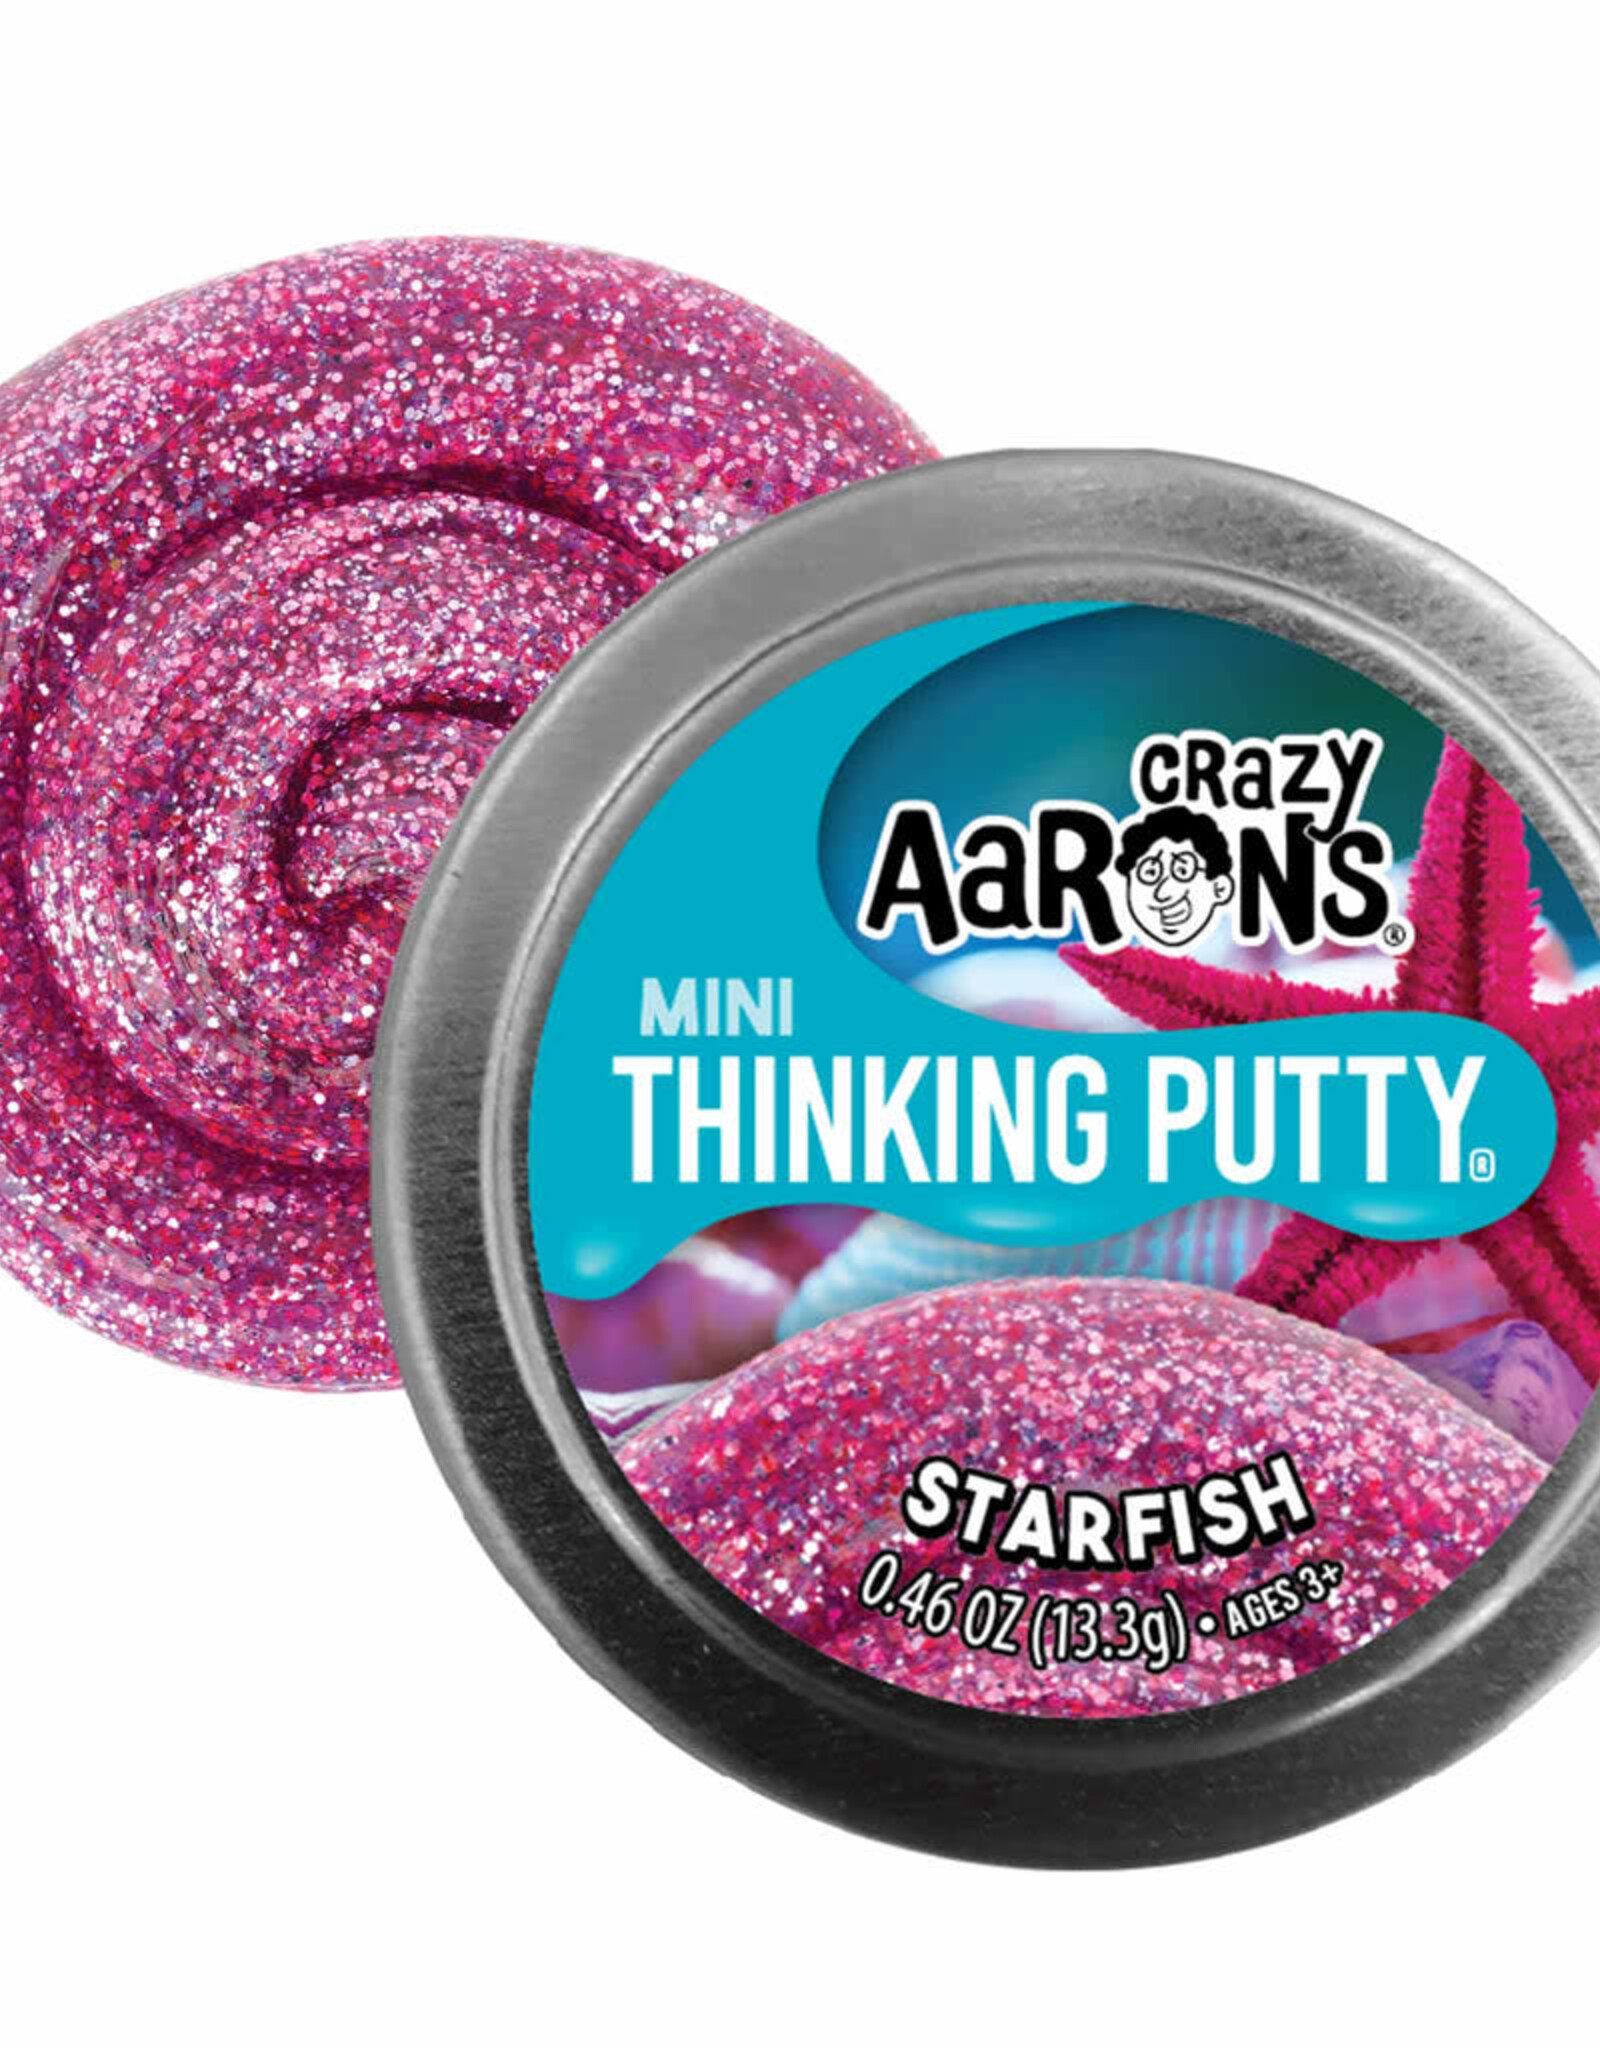 Crazy Aaron's Thinking Putty Crazy Aaron's 2" Mini Tin - STARFISH